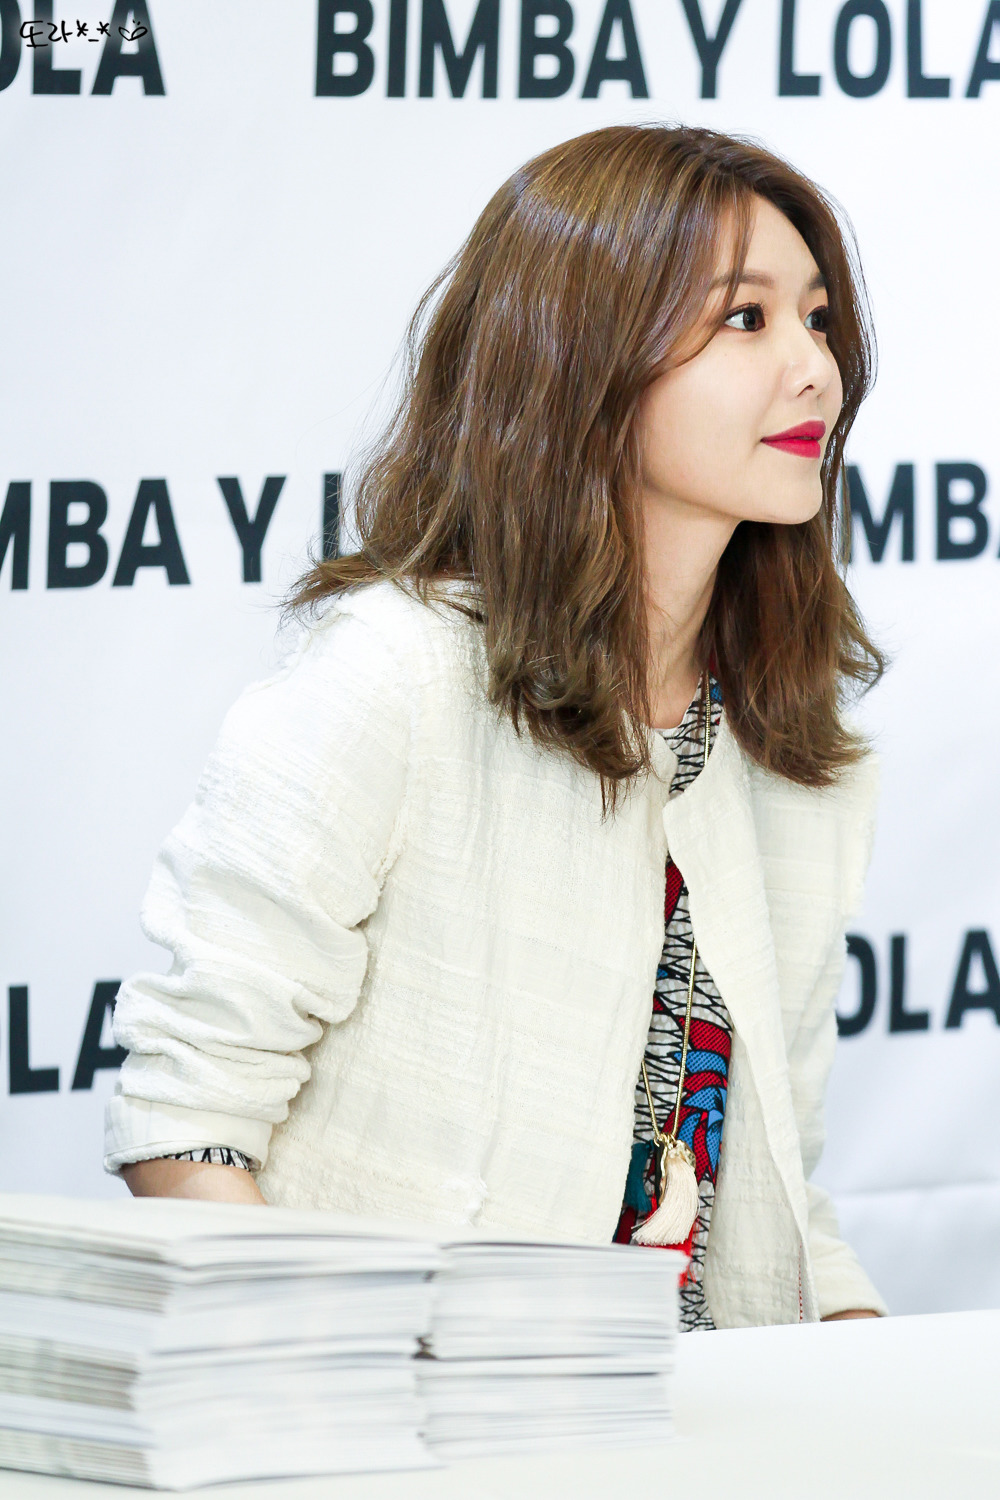 [PIC][10-03-2017]SooYoung tham dự buổi Fansign cho dòng thời trang "BIMBA Y LOLA" tại Lotte Department Store vào chiều nay - Page 2 217B7942590C73DF3001A0